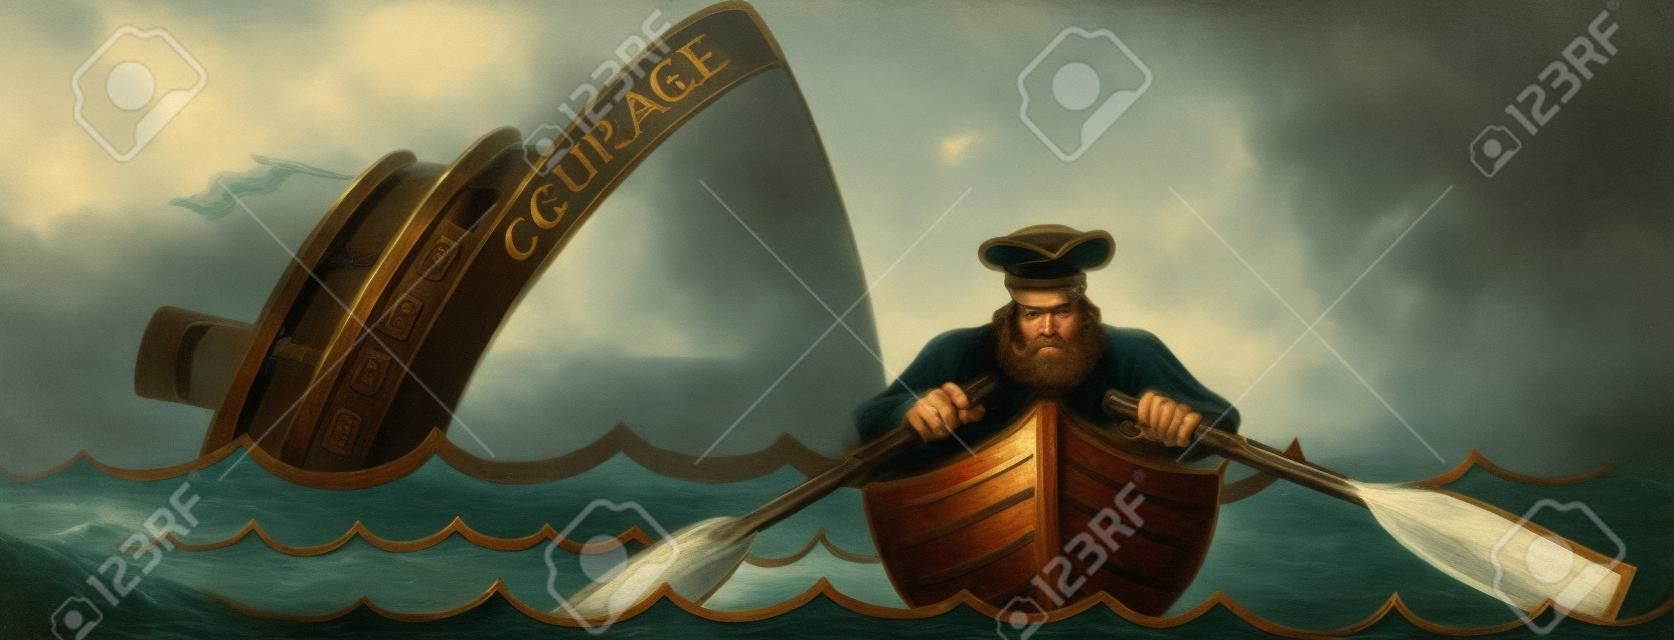 Kapitän Flucht das sinkende Schiff